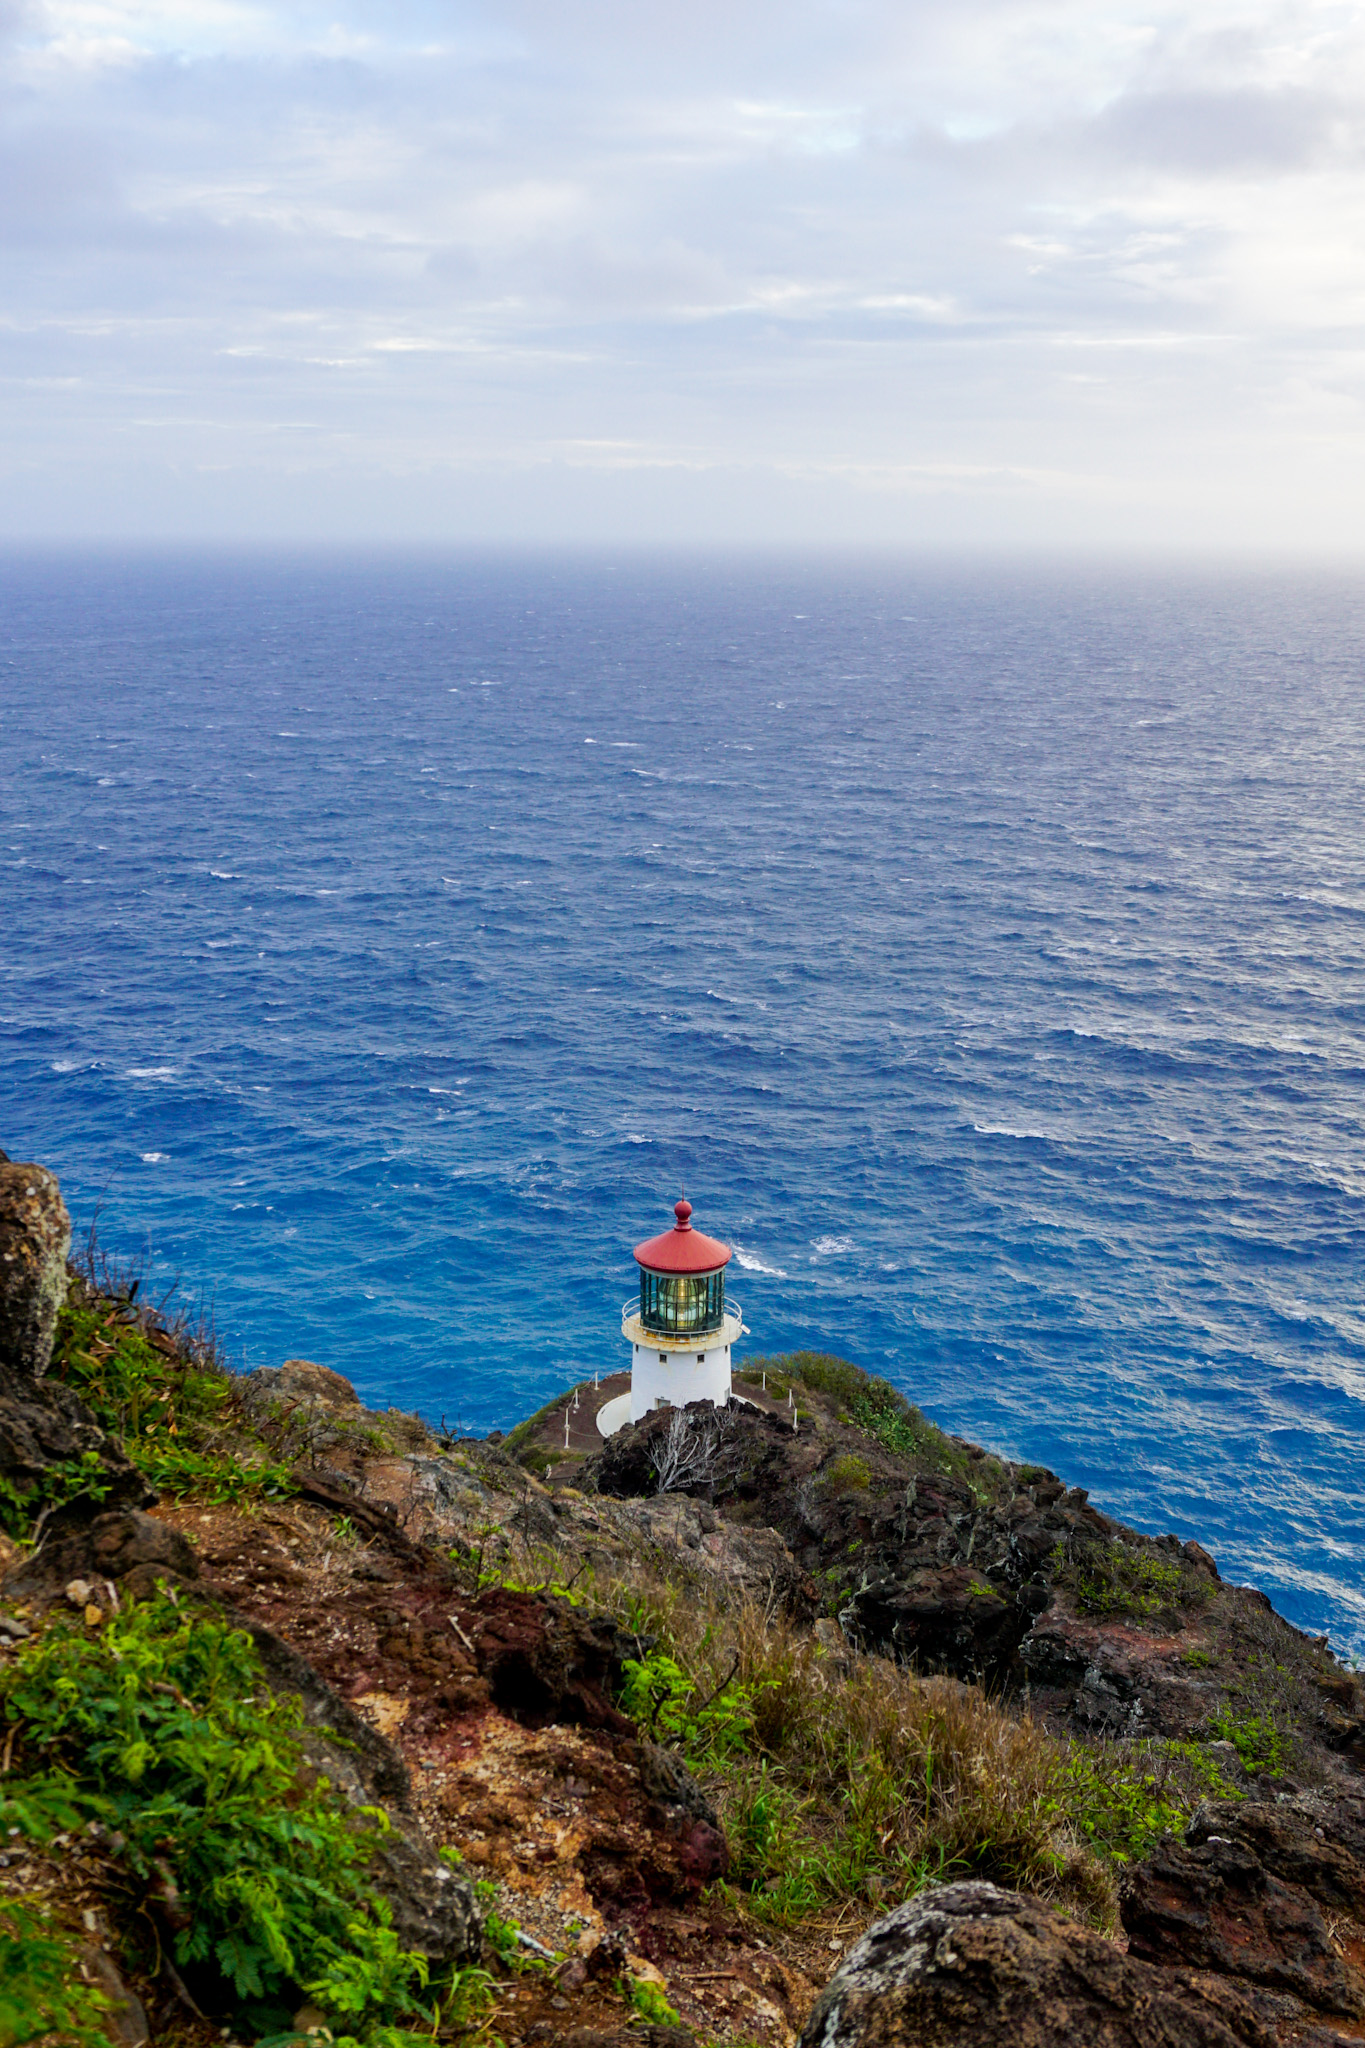 Makapuu Lighthouse Trail Oahu